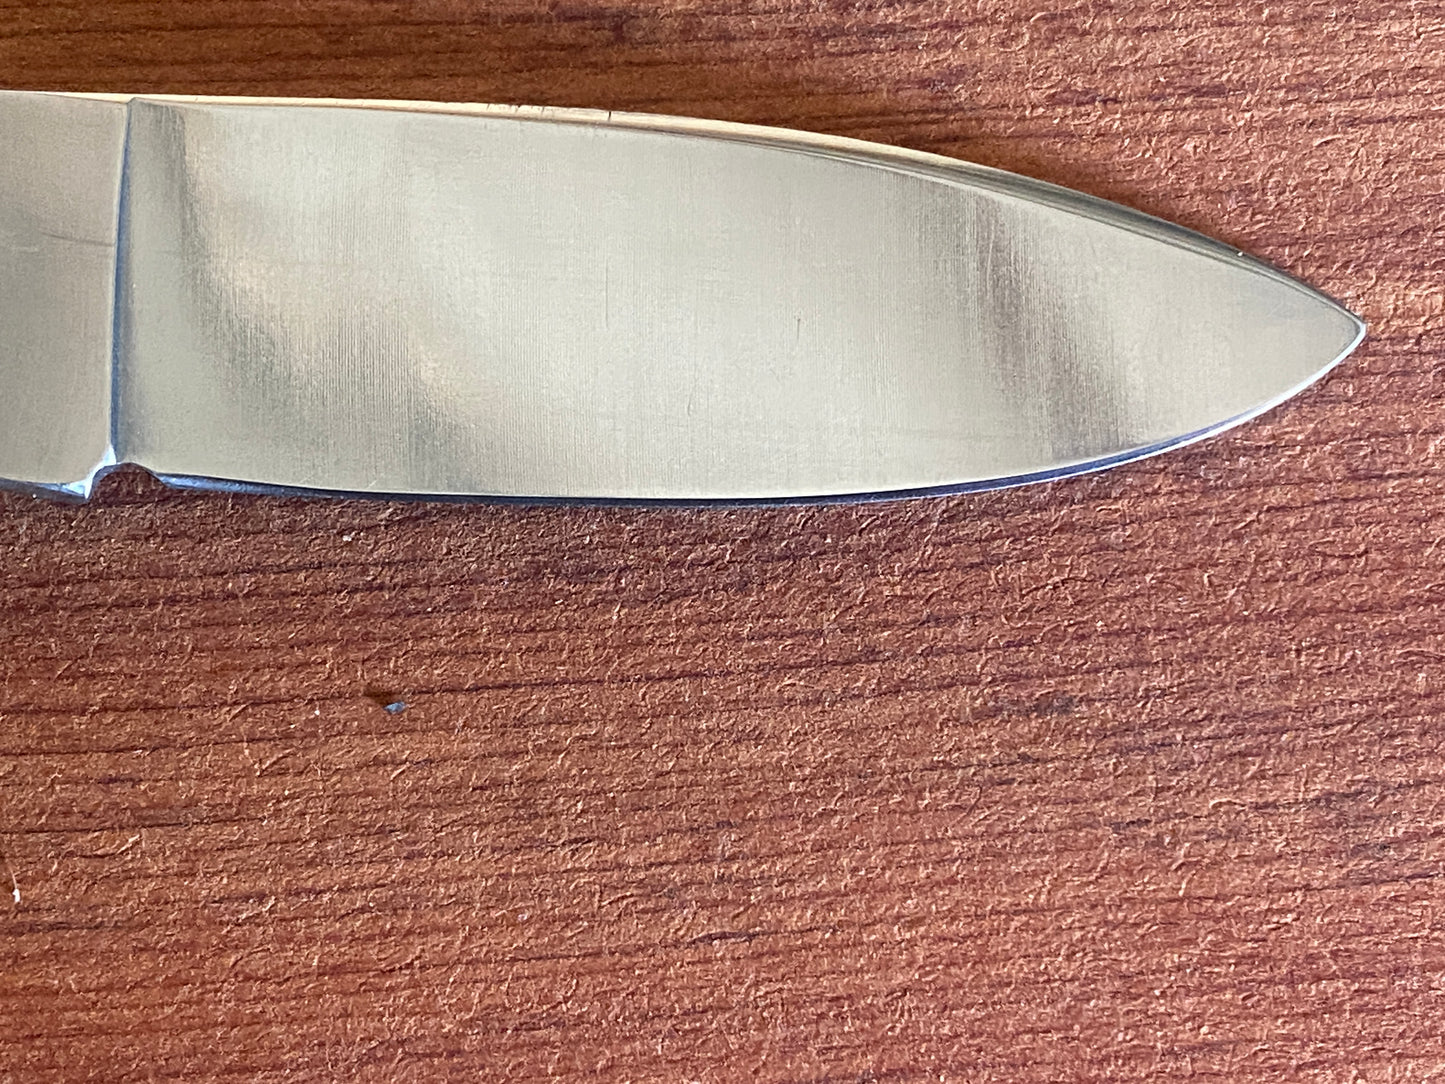 Western S-532 Pocket Knife